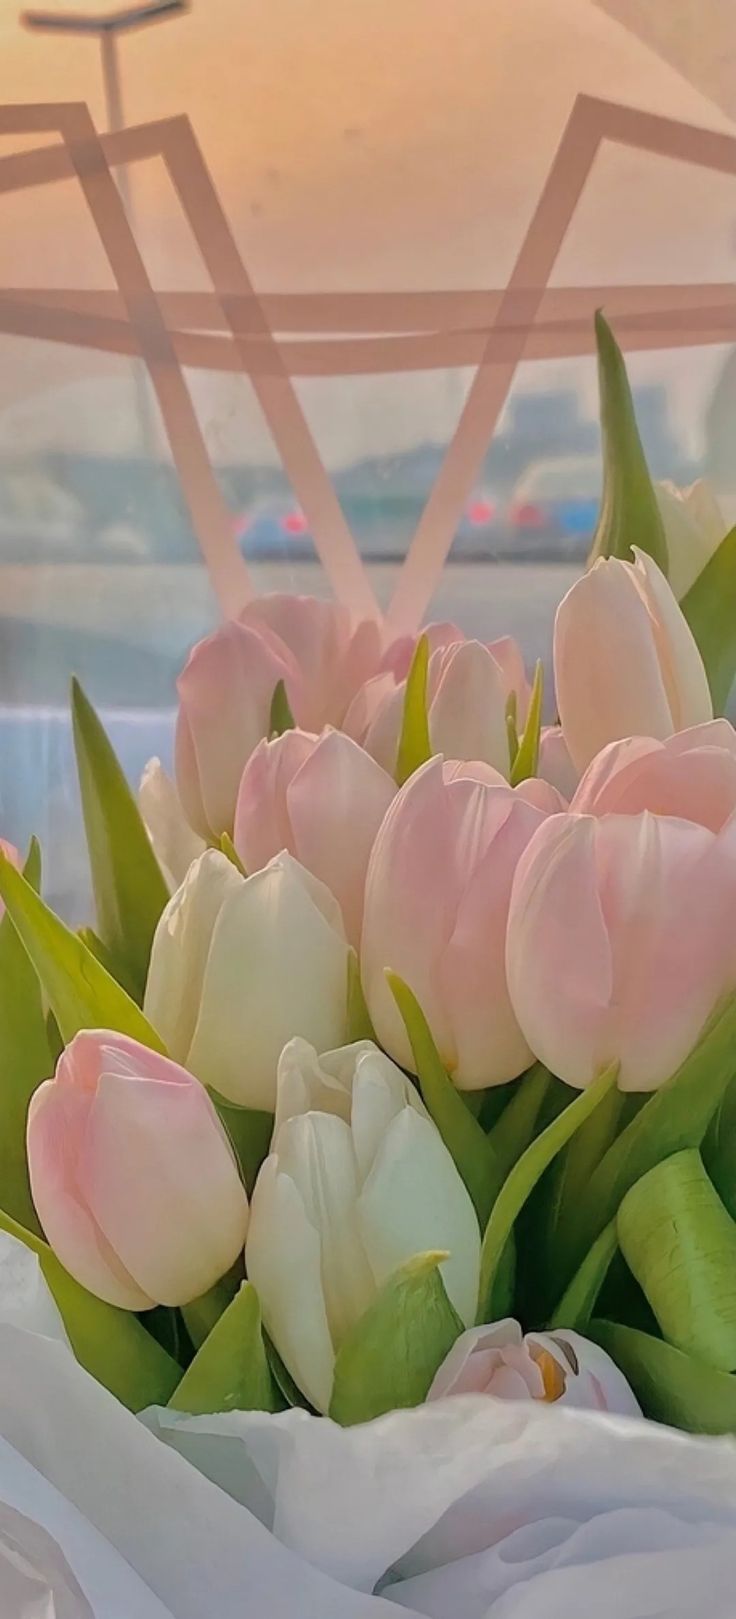 景. Flower aesthetic, Pretty flowers, Pink tulips wallpaper aesthetic. Flower aesthetic, Beautiful bouquet of flowers, Boquette flowers